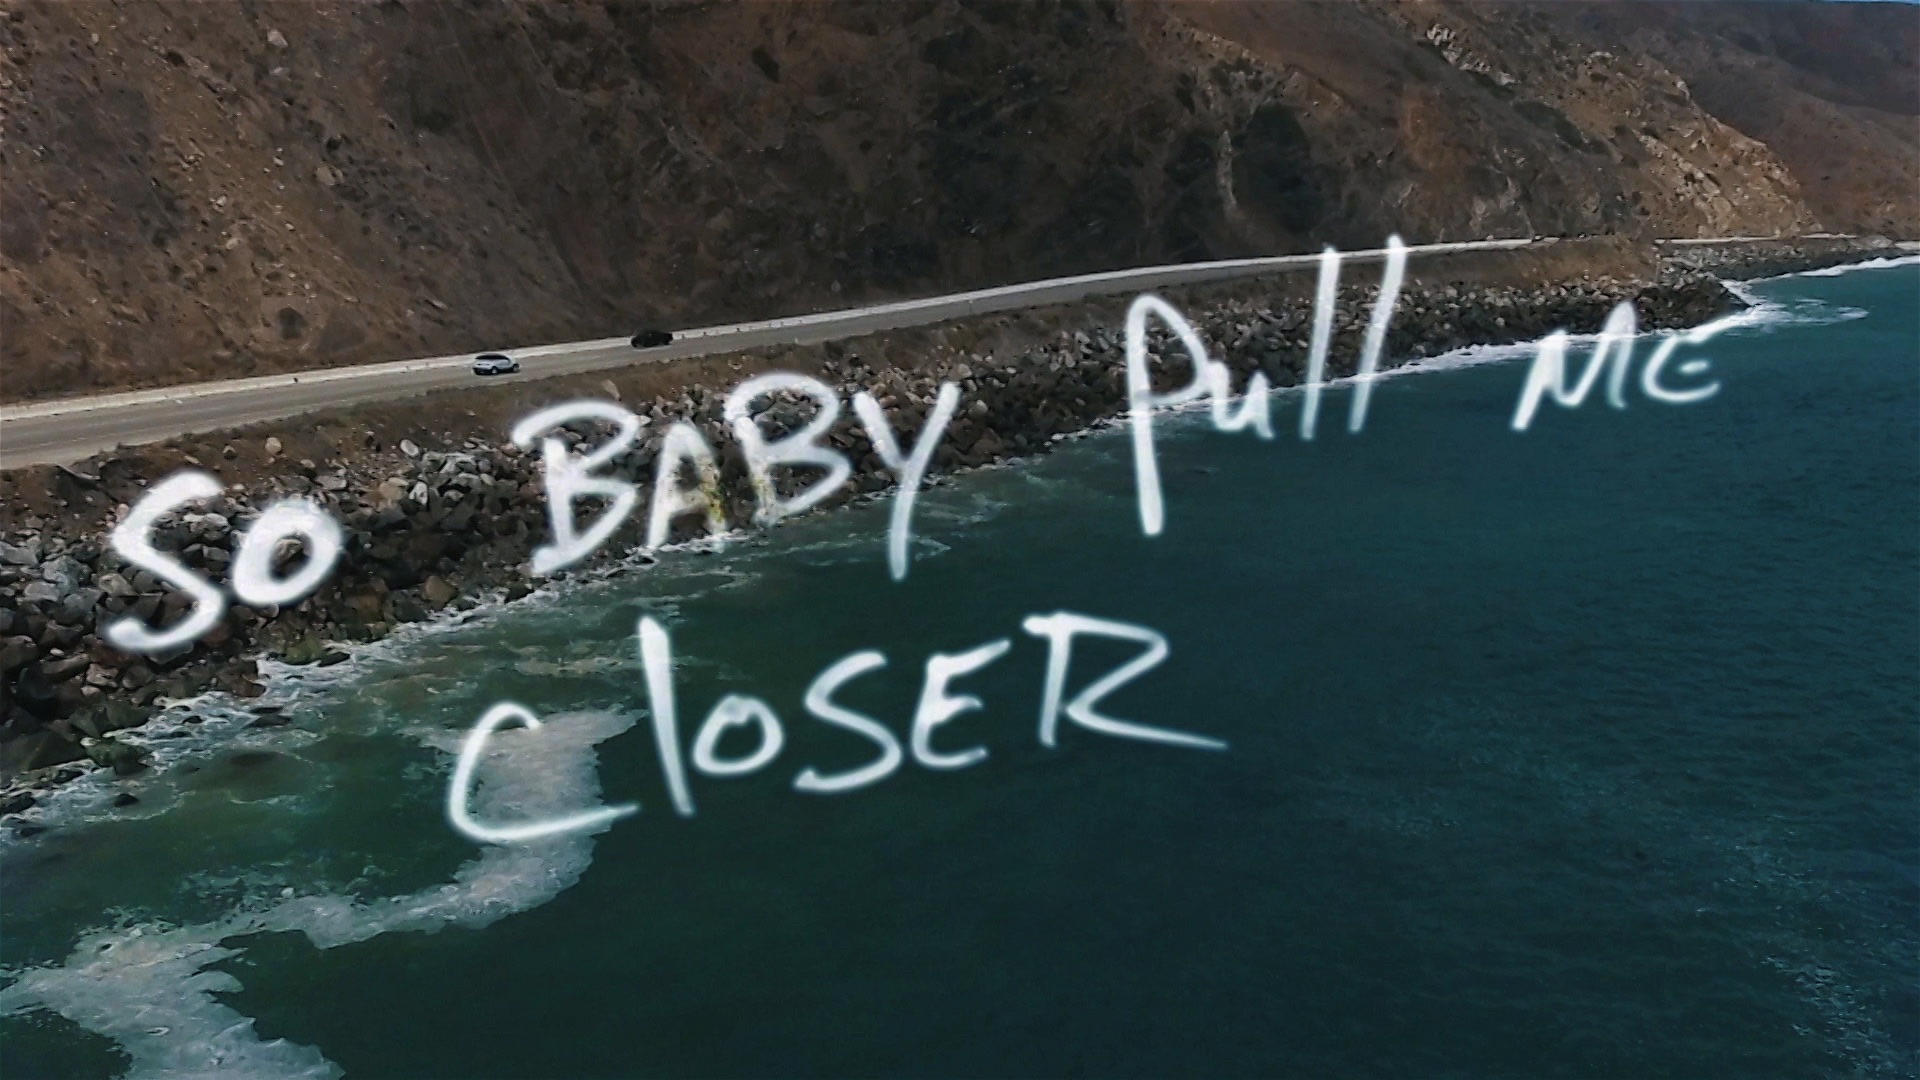 Closer the Chainsmokers. The Chainsmokers - closer (Lyric) ft. Halsey. The Chainsmokers closer Lyrics. The Chainsmokers closer Video ft Halsey.